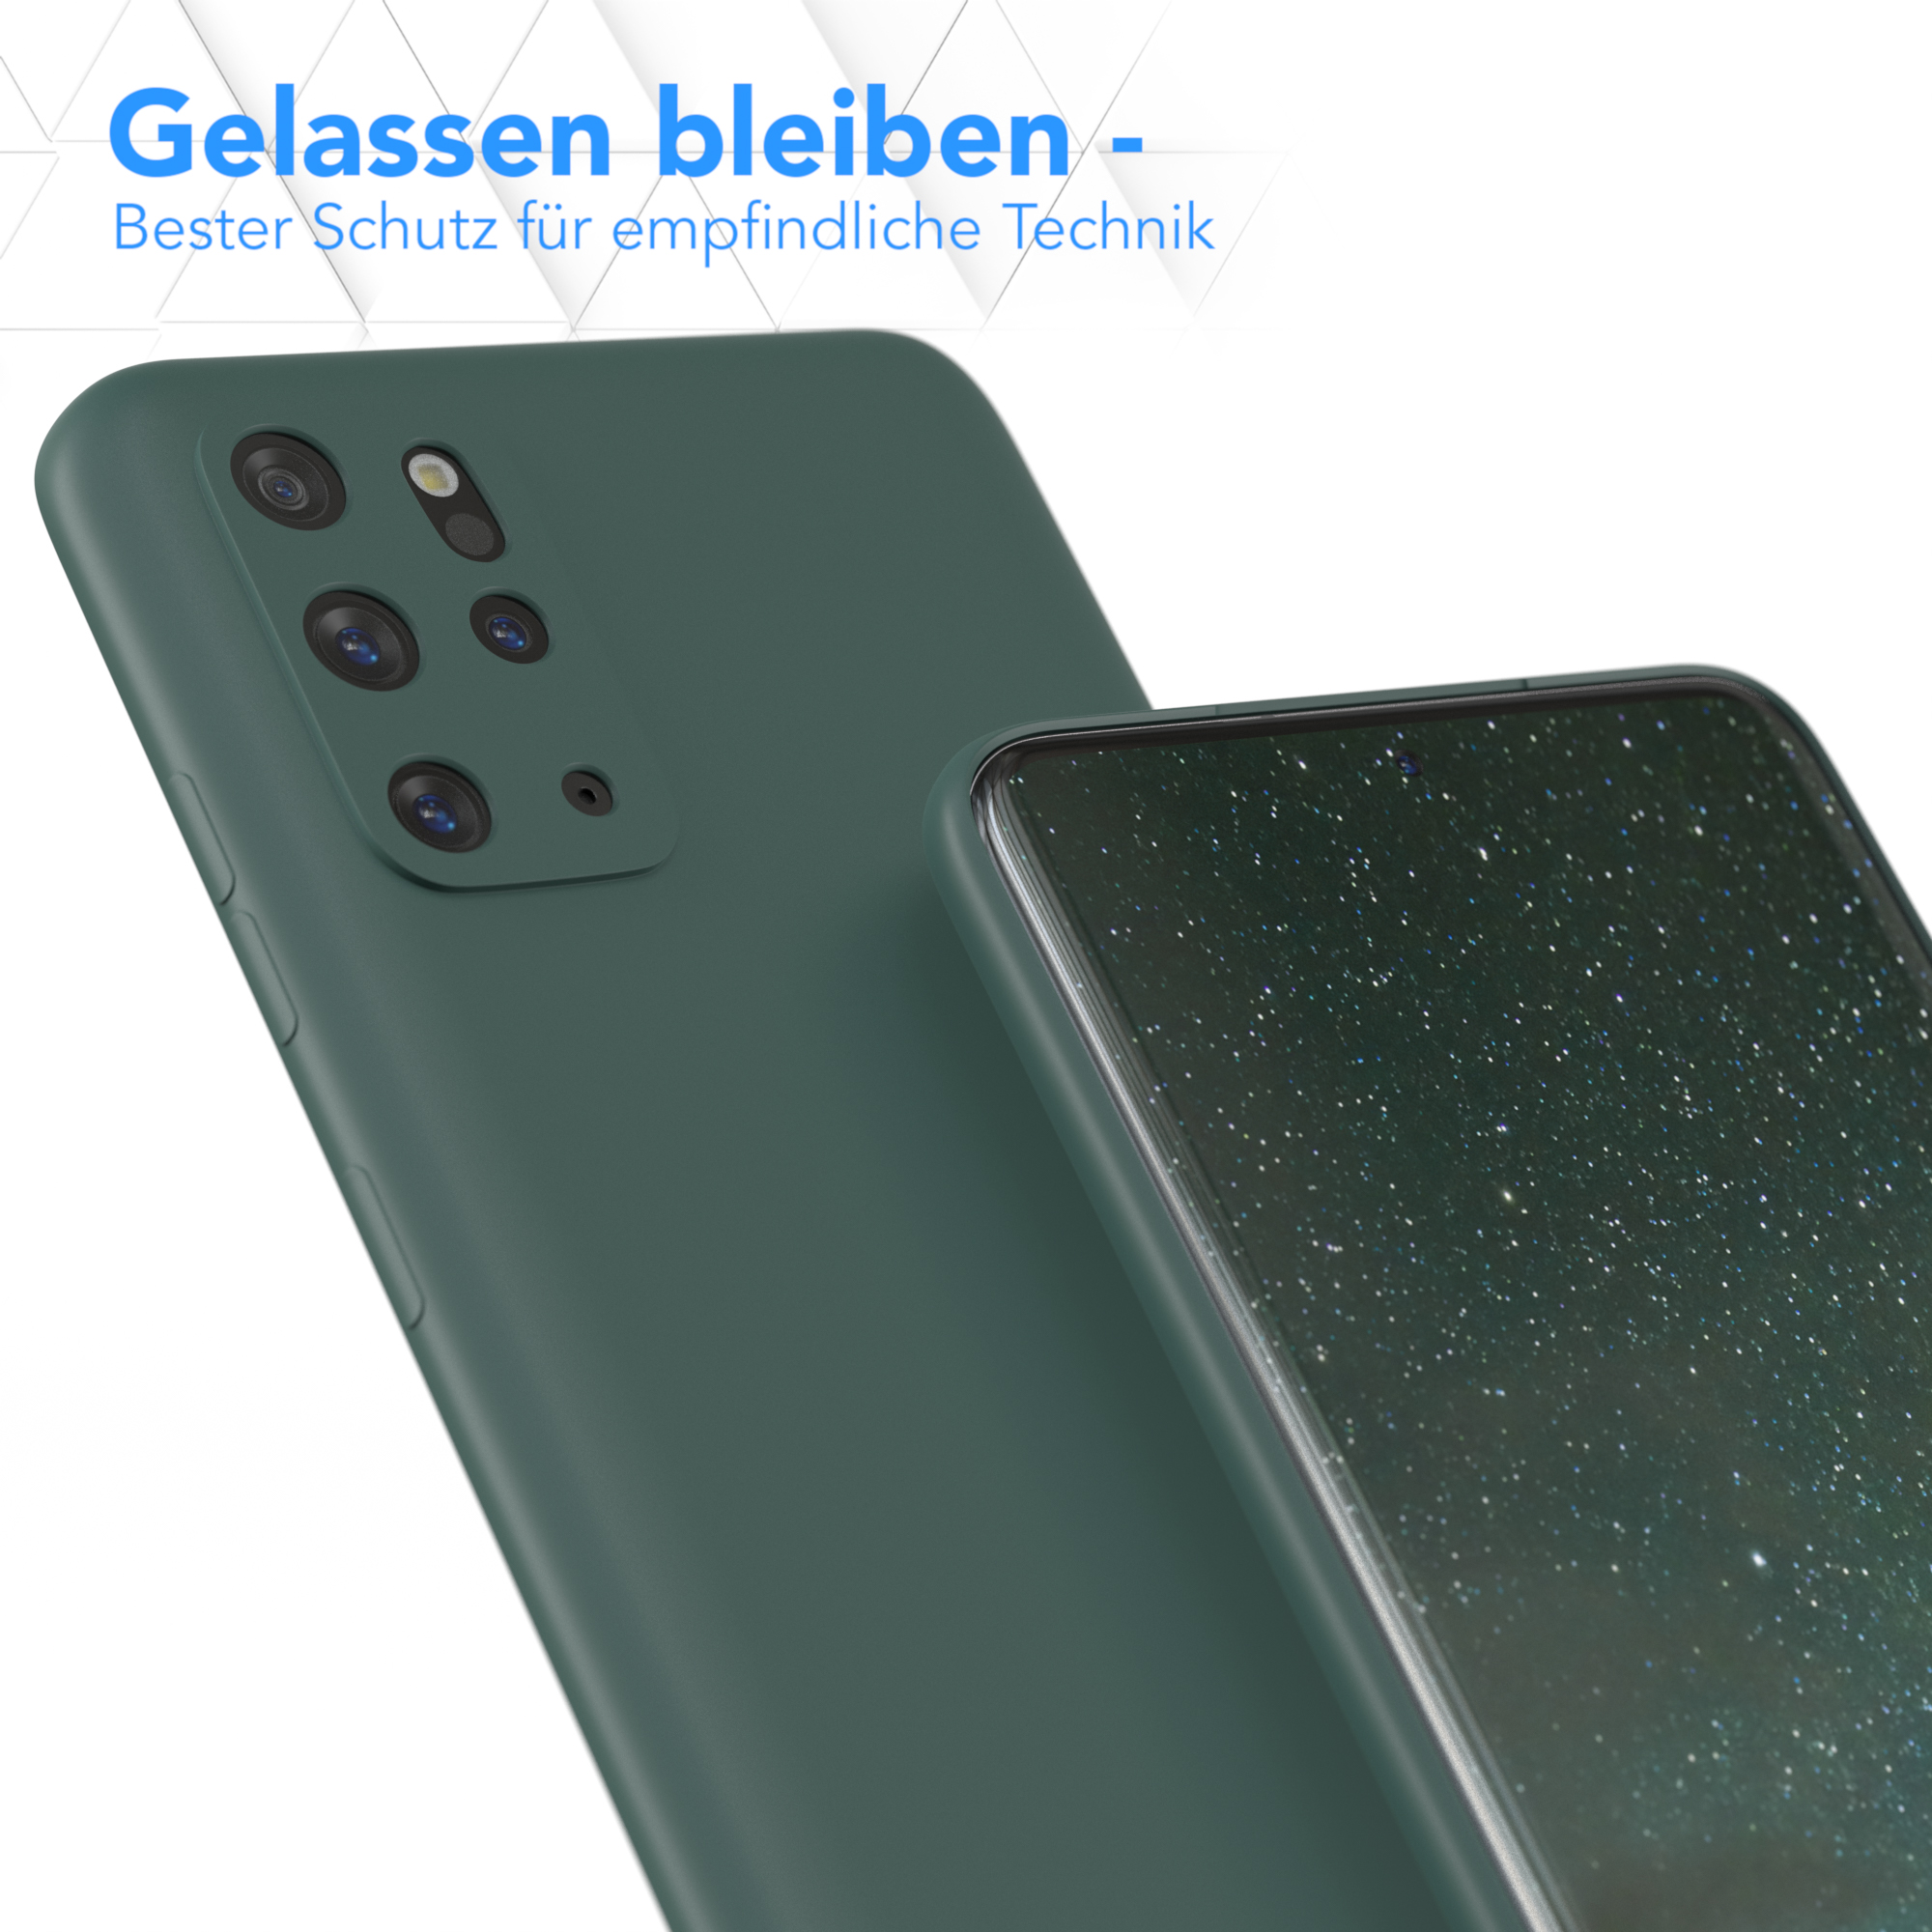 Handycase EAZY Plus Galaxy / TPU CASE Nachtgrün S20 Samsung, 5G, S20 Matt, Backcover, / Grün Plus Silikon